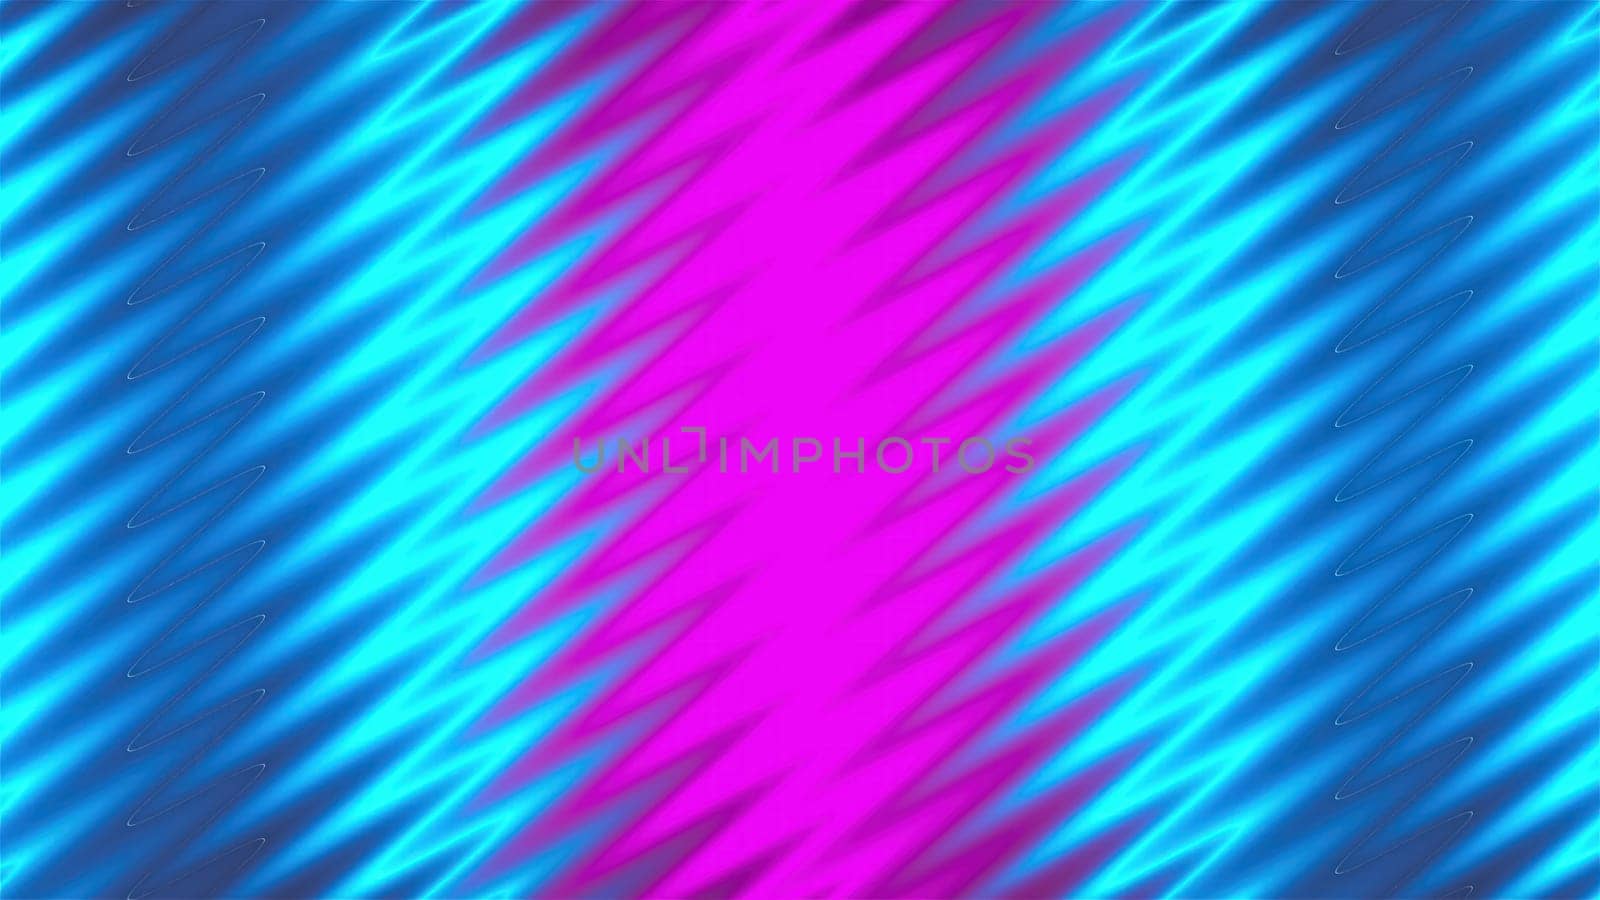 Zig zag neon lines. Computer generated 3d render